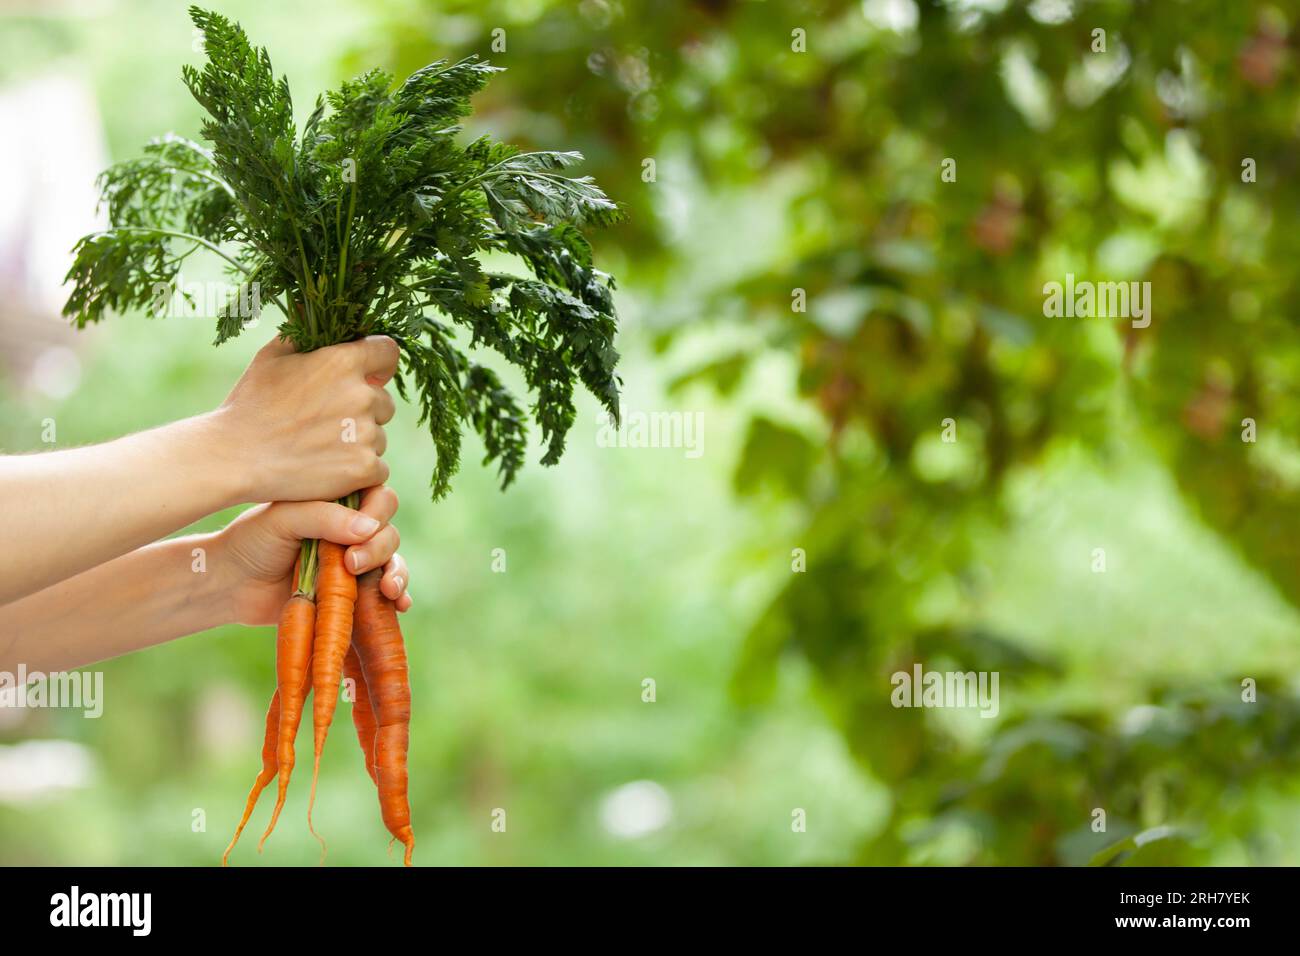 Roh, vegan, vegetarisch, Speisekonzept. Eine Frauenhand hält drei frische Karotten mit Oberteilen. Unscharfer Hintergrund, Kopierbereich. Stockfoto